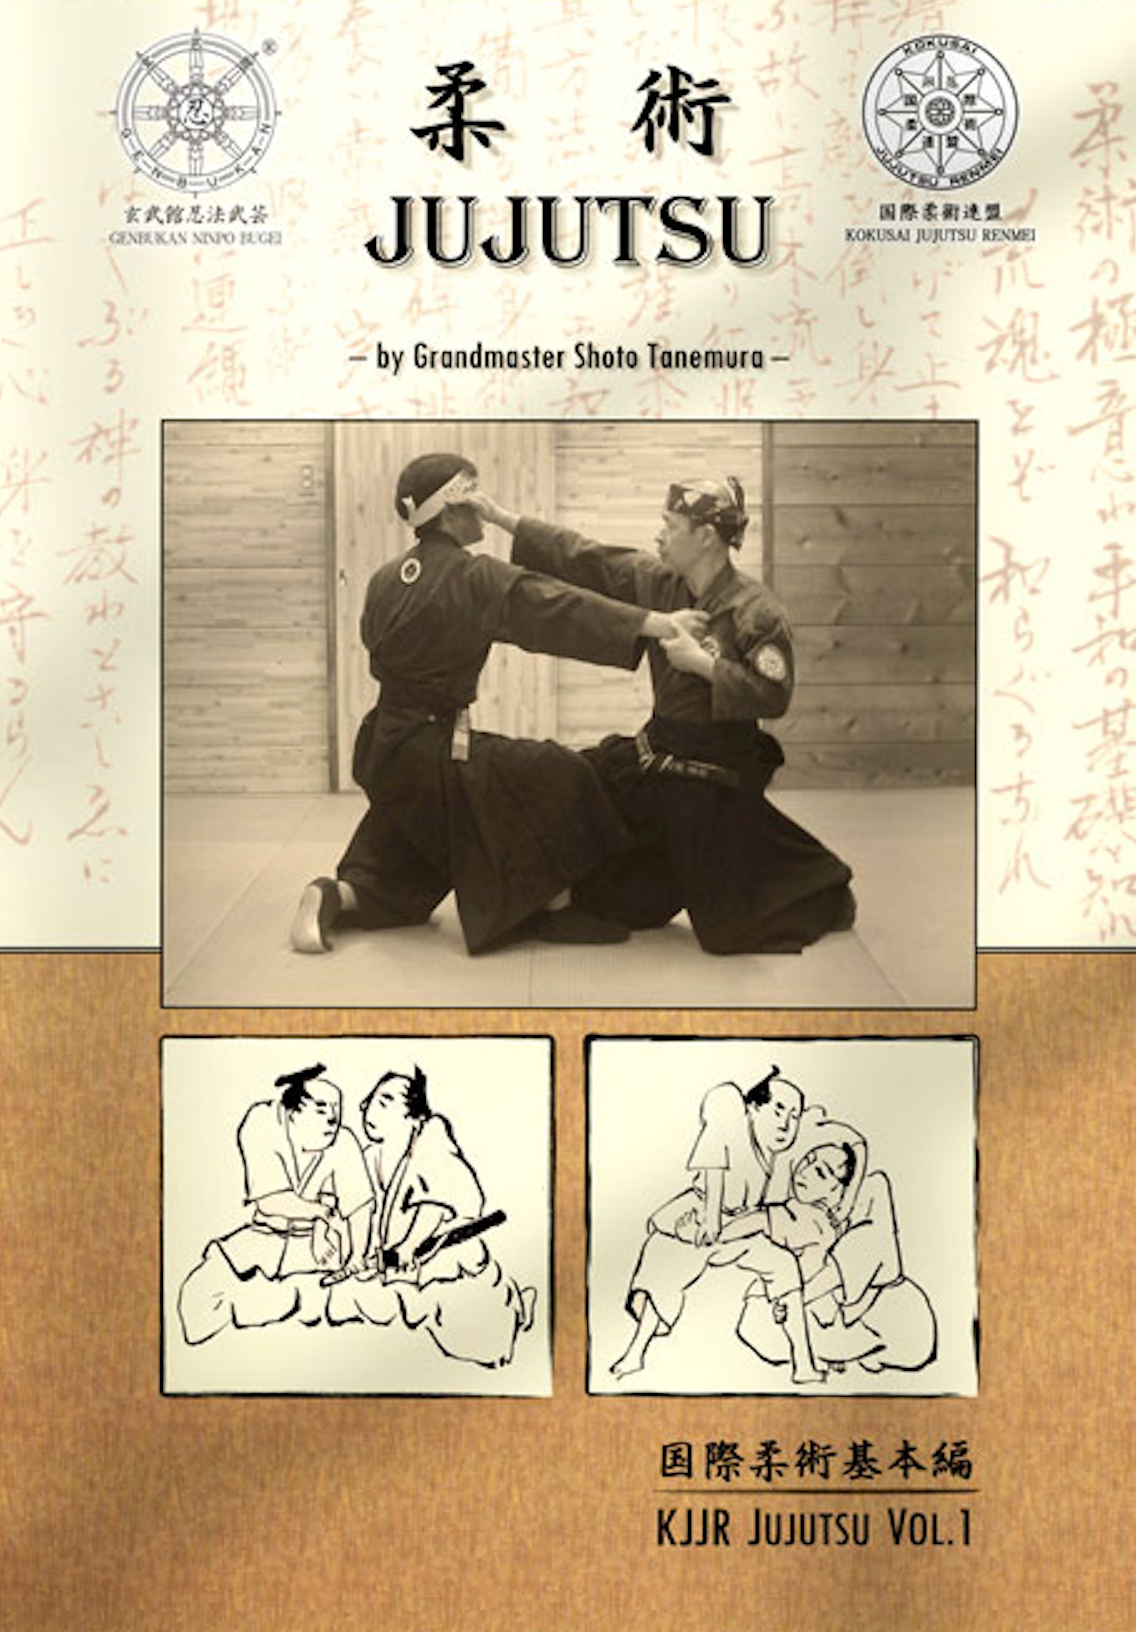 Kokusai Jujutsu Renmei Jujutsu Book by Shoto Tanemura (Preowned)